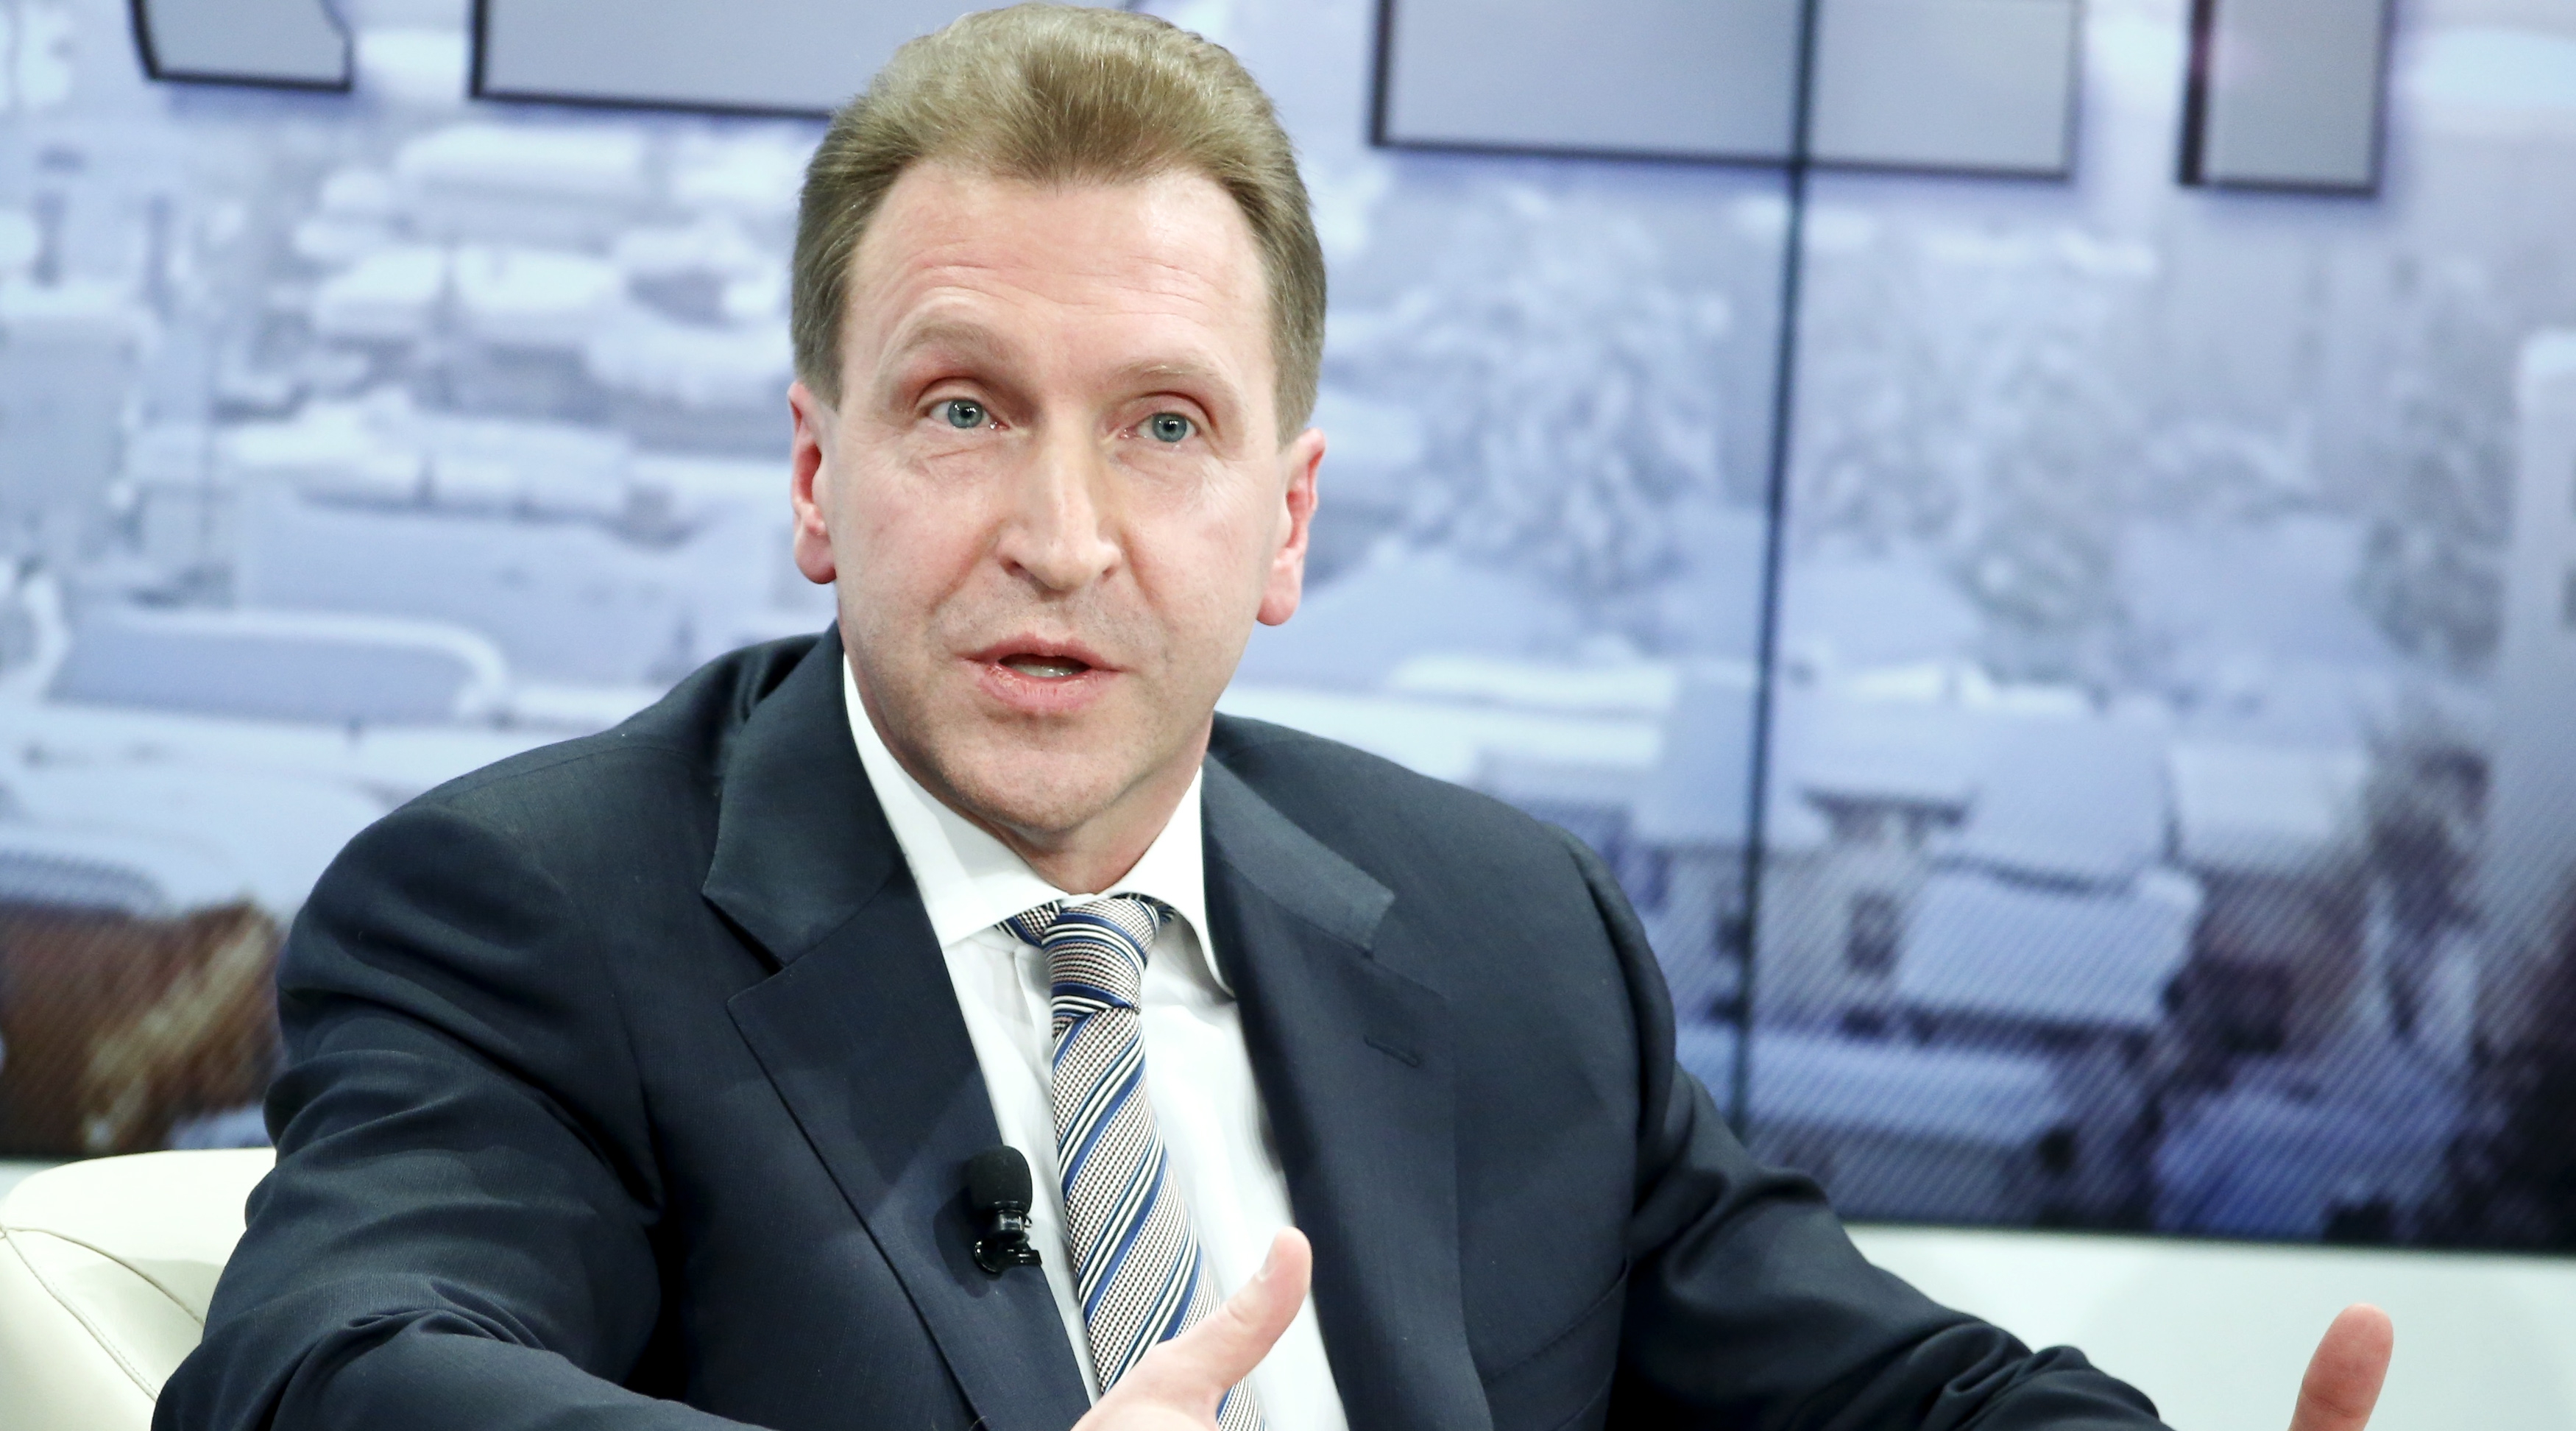 Шувалов назвал лживыми обвинения Евросоюза в адрес России в срыве переговоров по ЗСТ